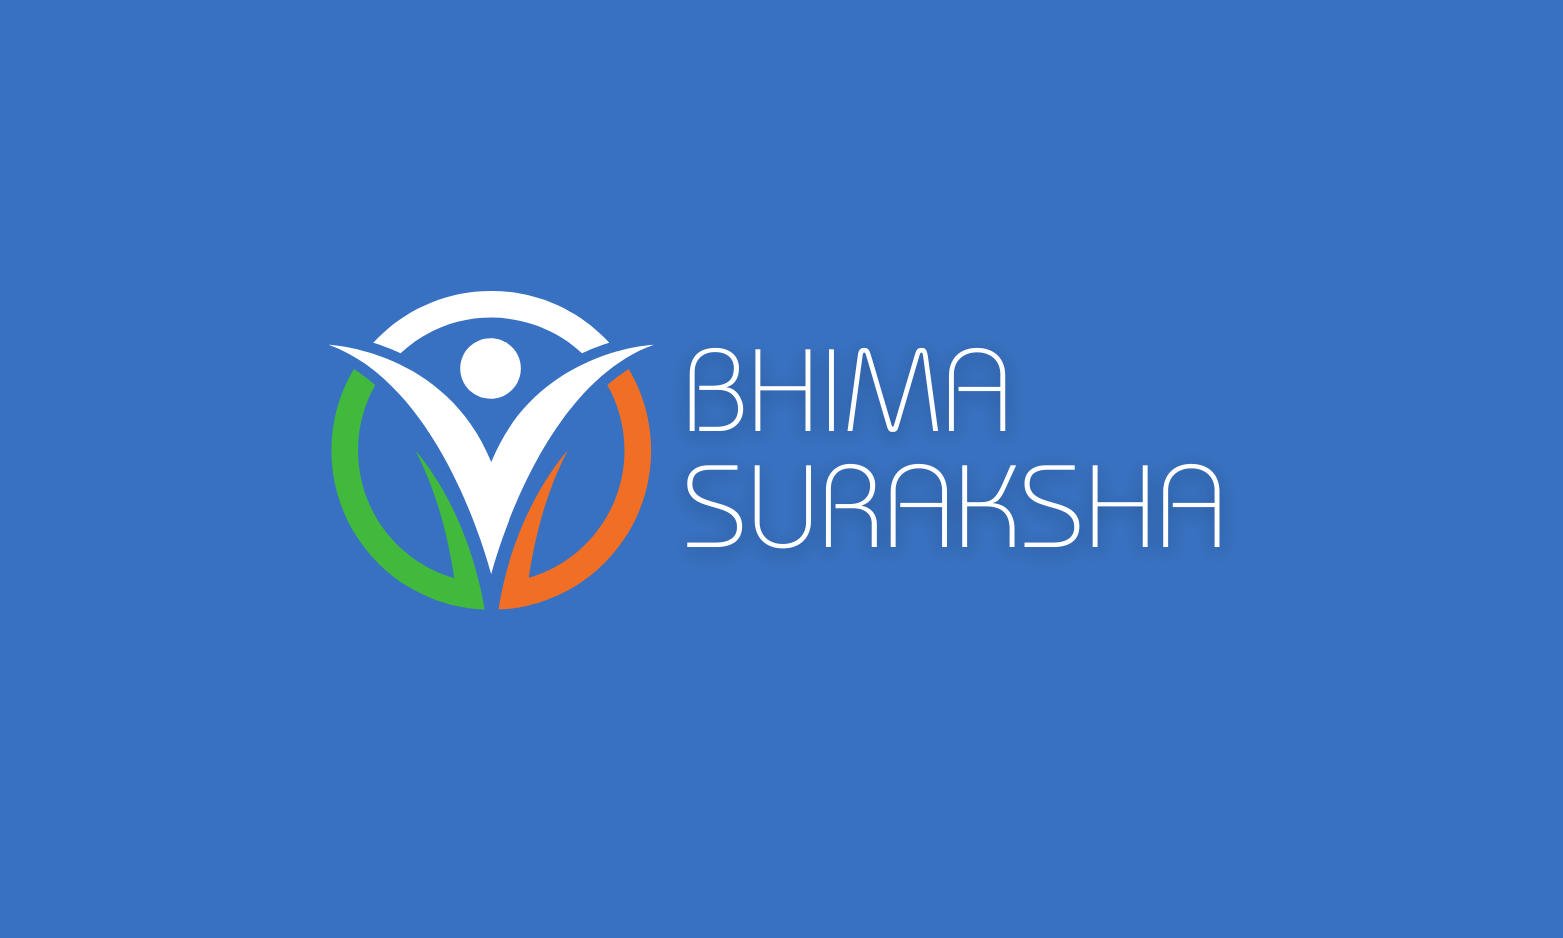 BhimaSuraksha.in